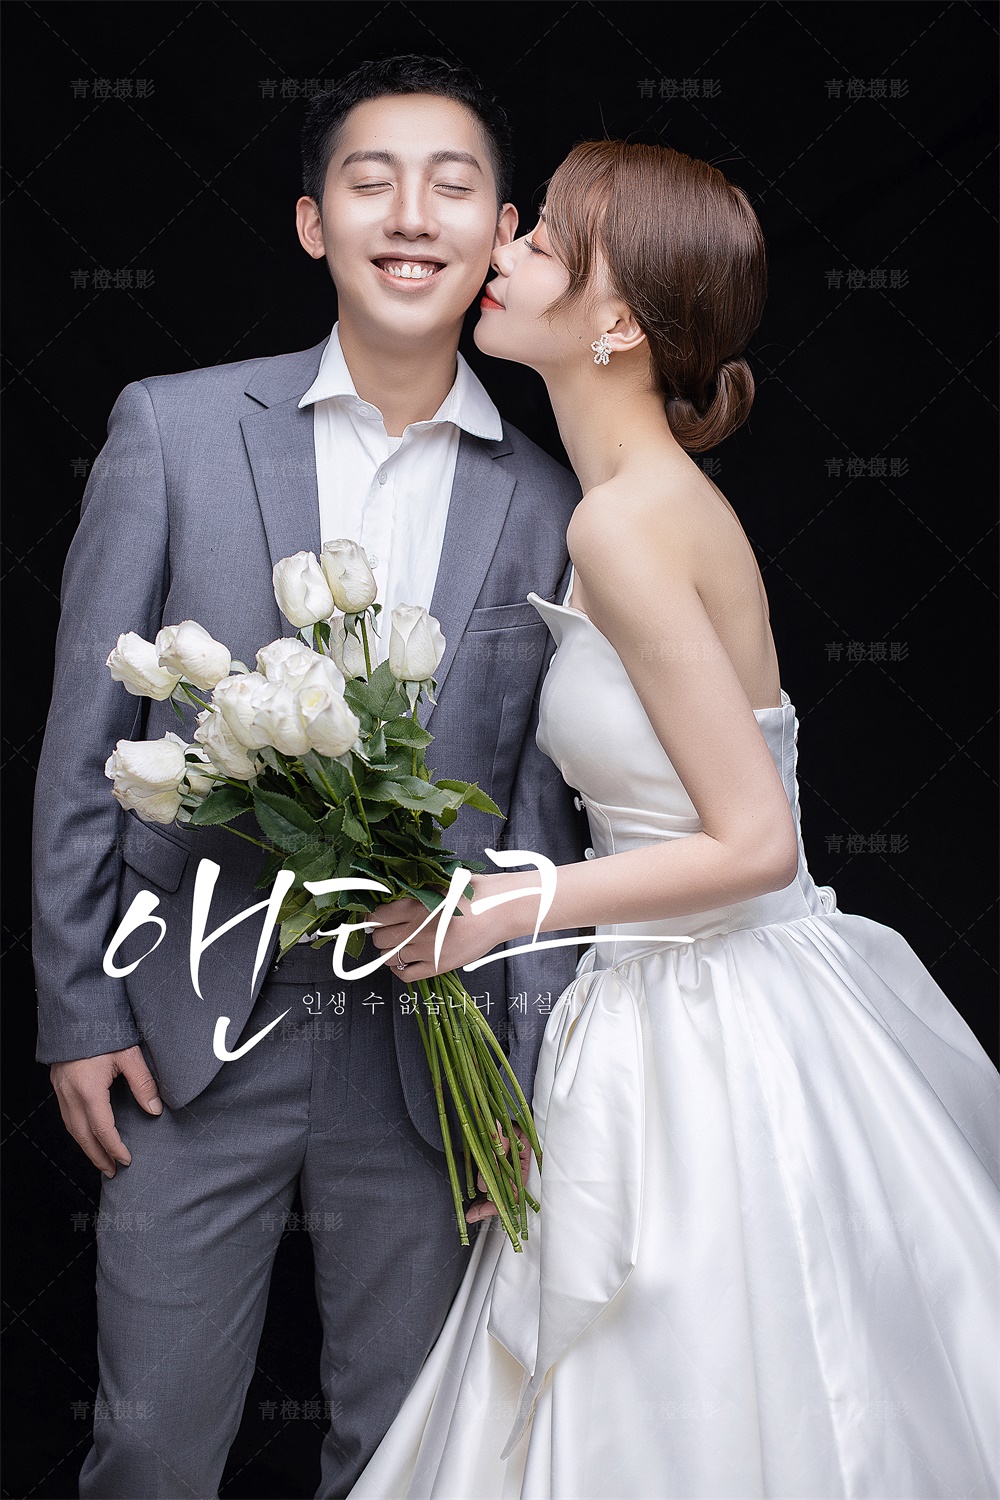 【内景】幸福不是耀眼的主目，韩式婚纱照的风格如同清新淡雅的风，温馨 ，幸福感的氛围。